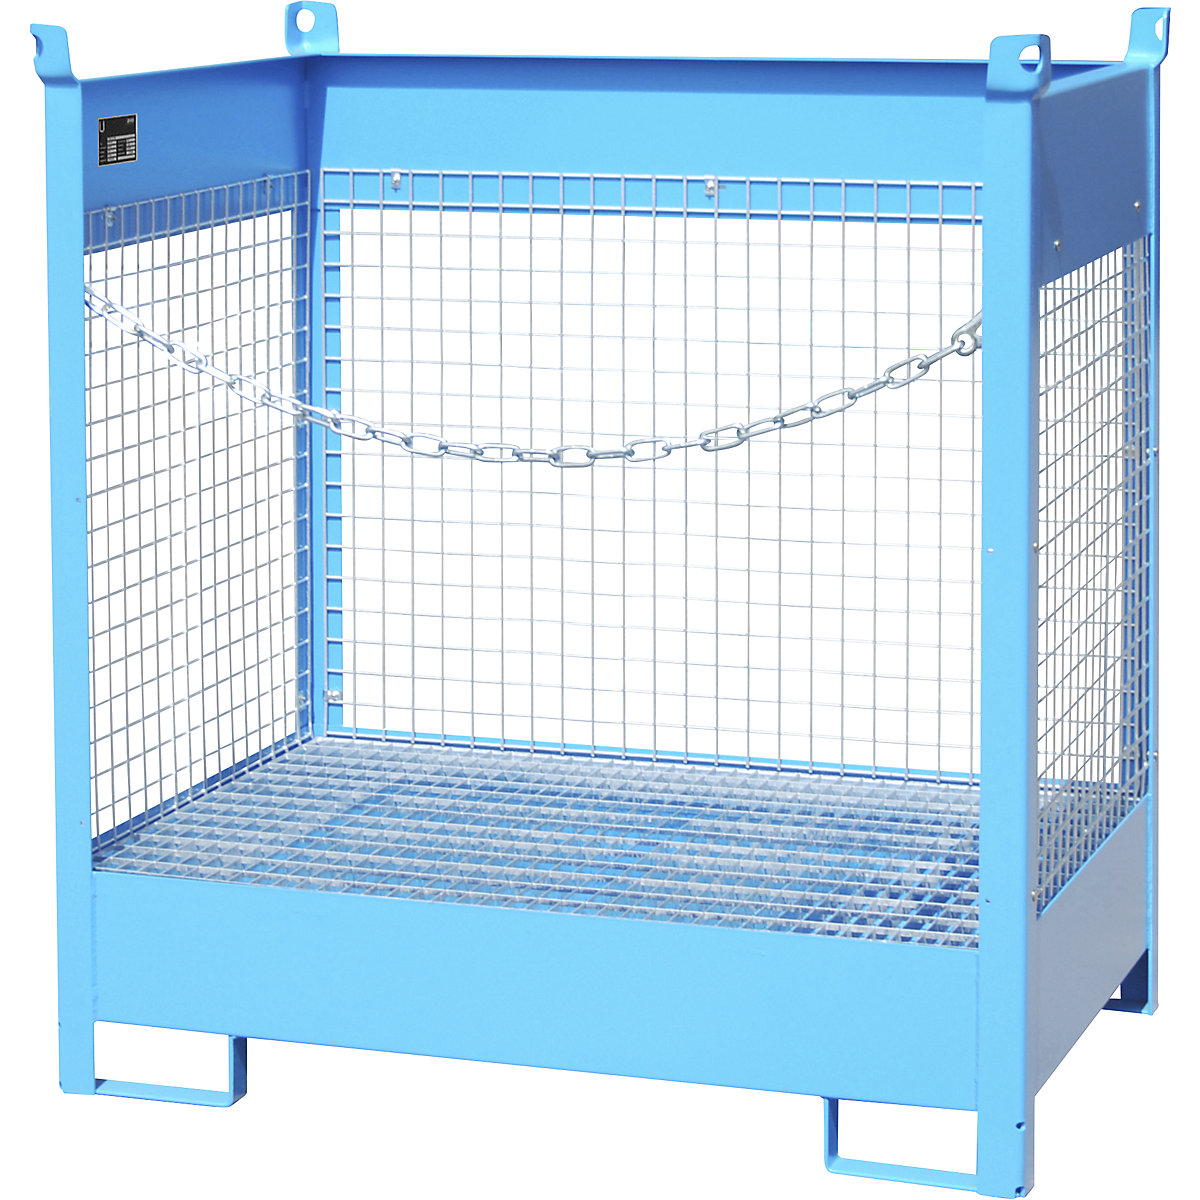 Skladiščna in transportna paleta s prestrezno kadico – eurokraft pro, 3 mrežaste stranice, za 2 soda prostornine 200 l, modre barve-17